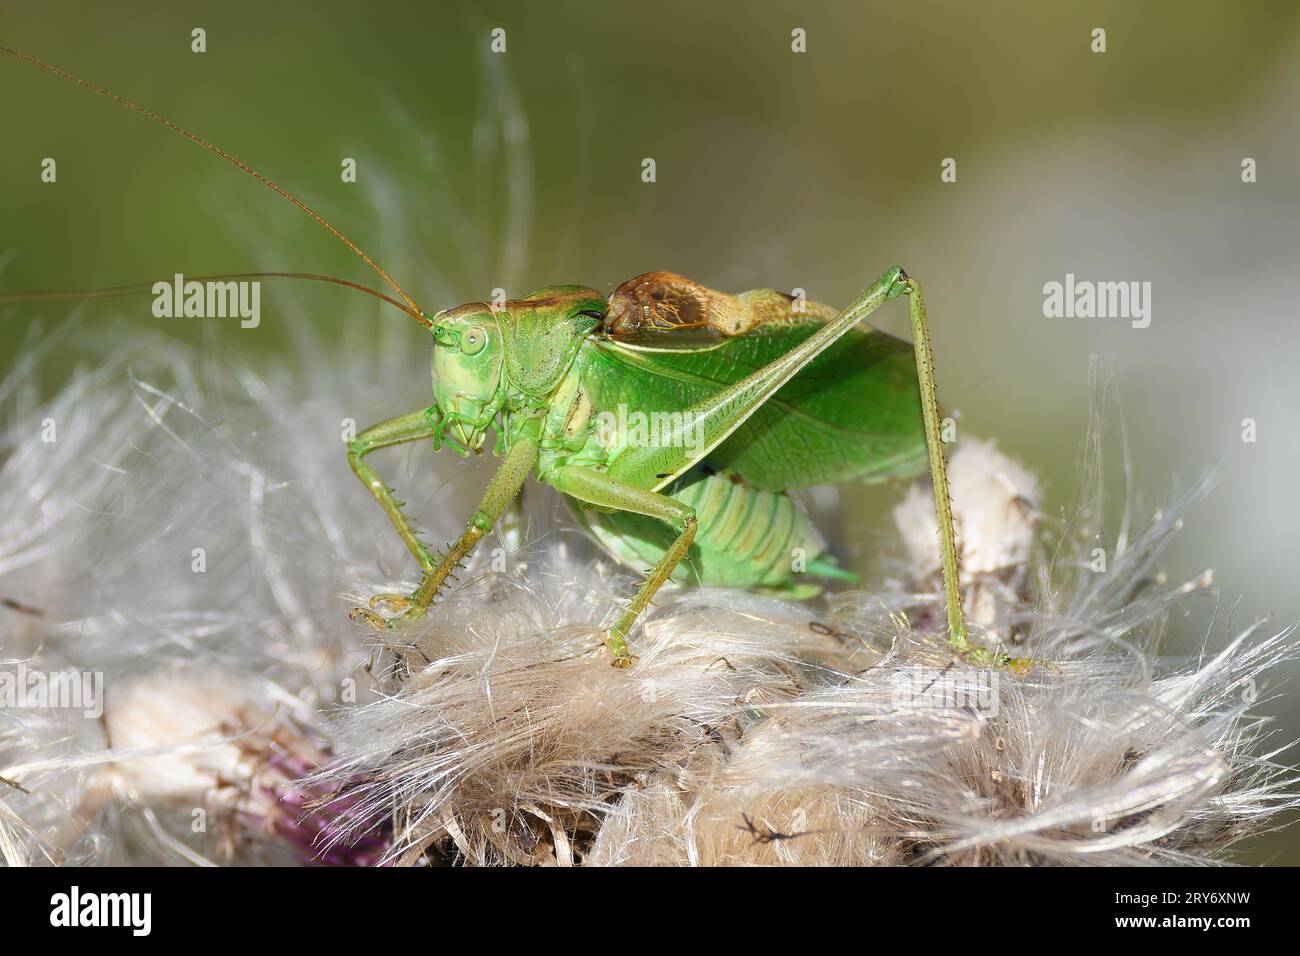 Cavalletta verde su impianto di fioritura del cardo. Grande cricket verde, Tettigonia viridissima. Foto Stock